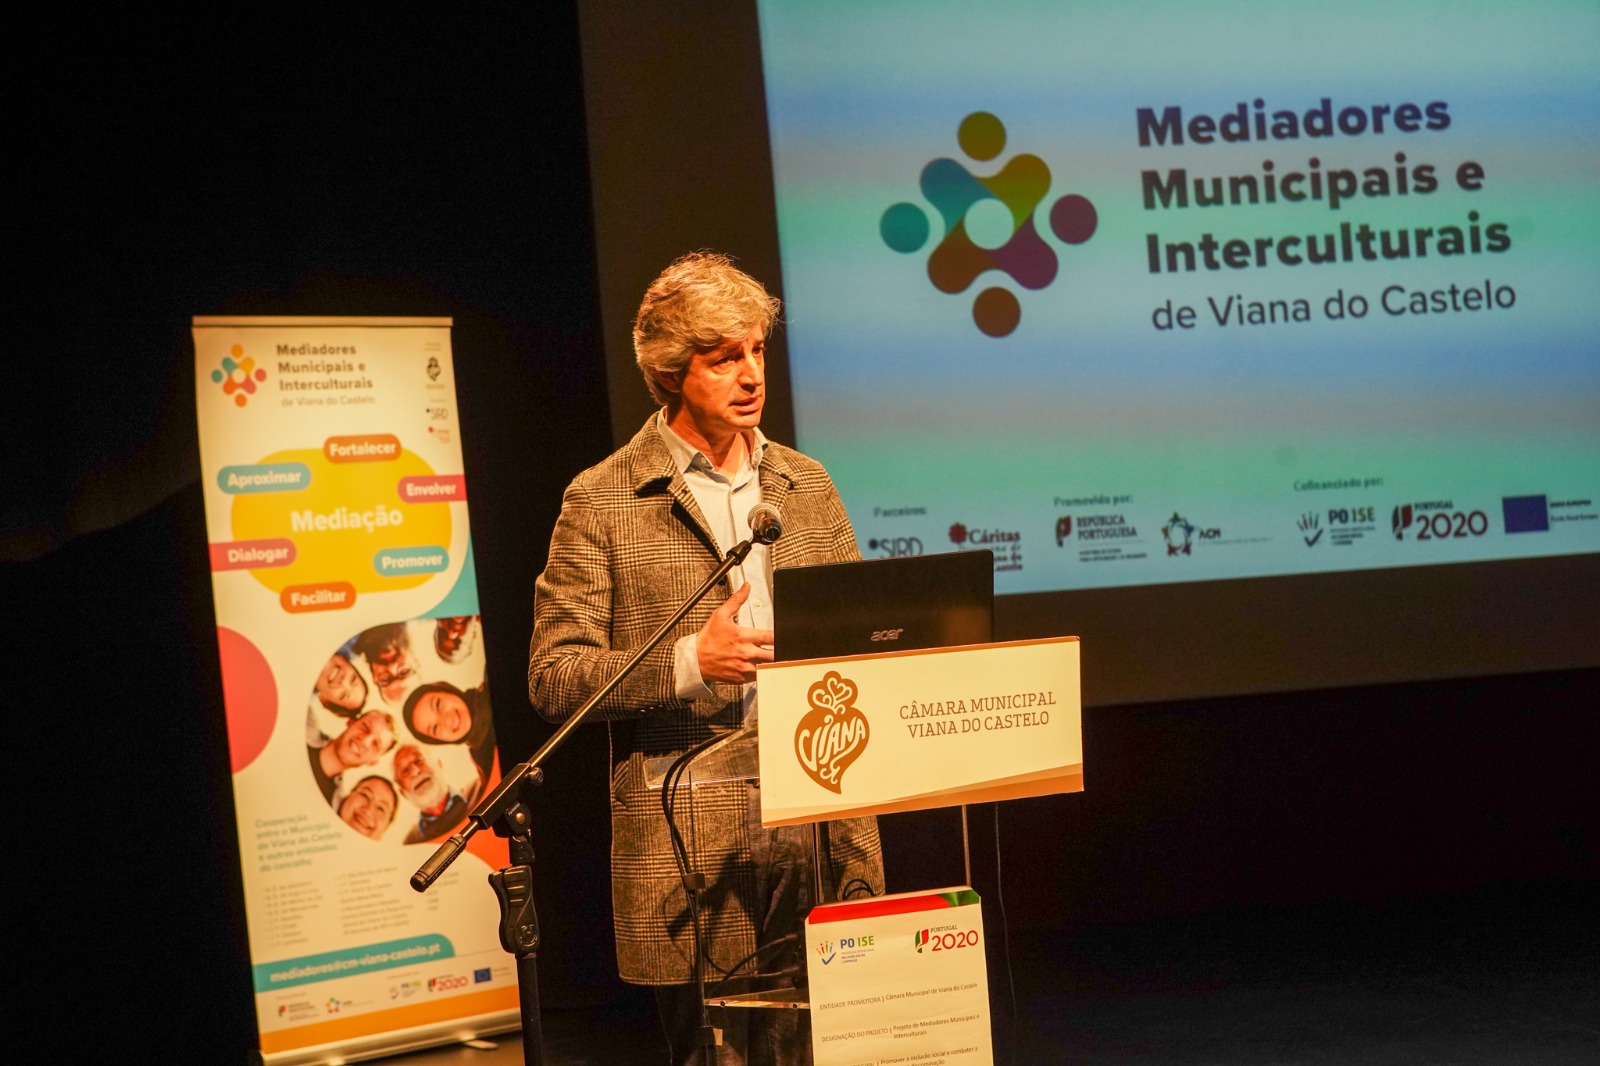 Mediadores municipais e interculturais promovem inclusão social e combatem discriminação